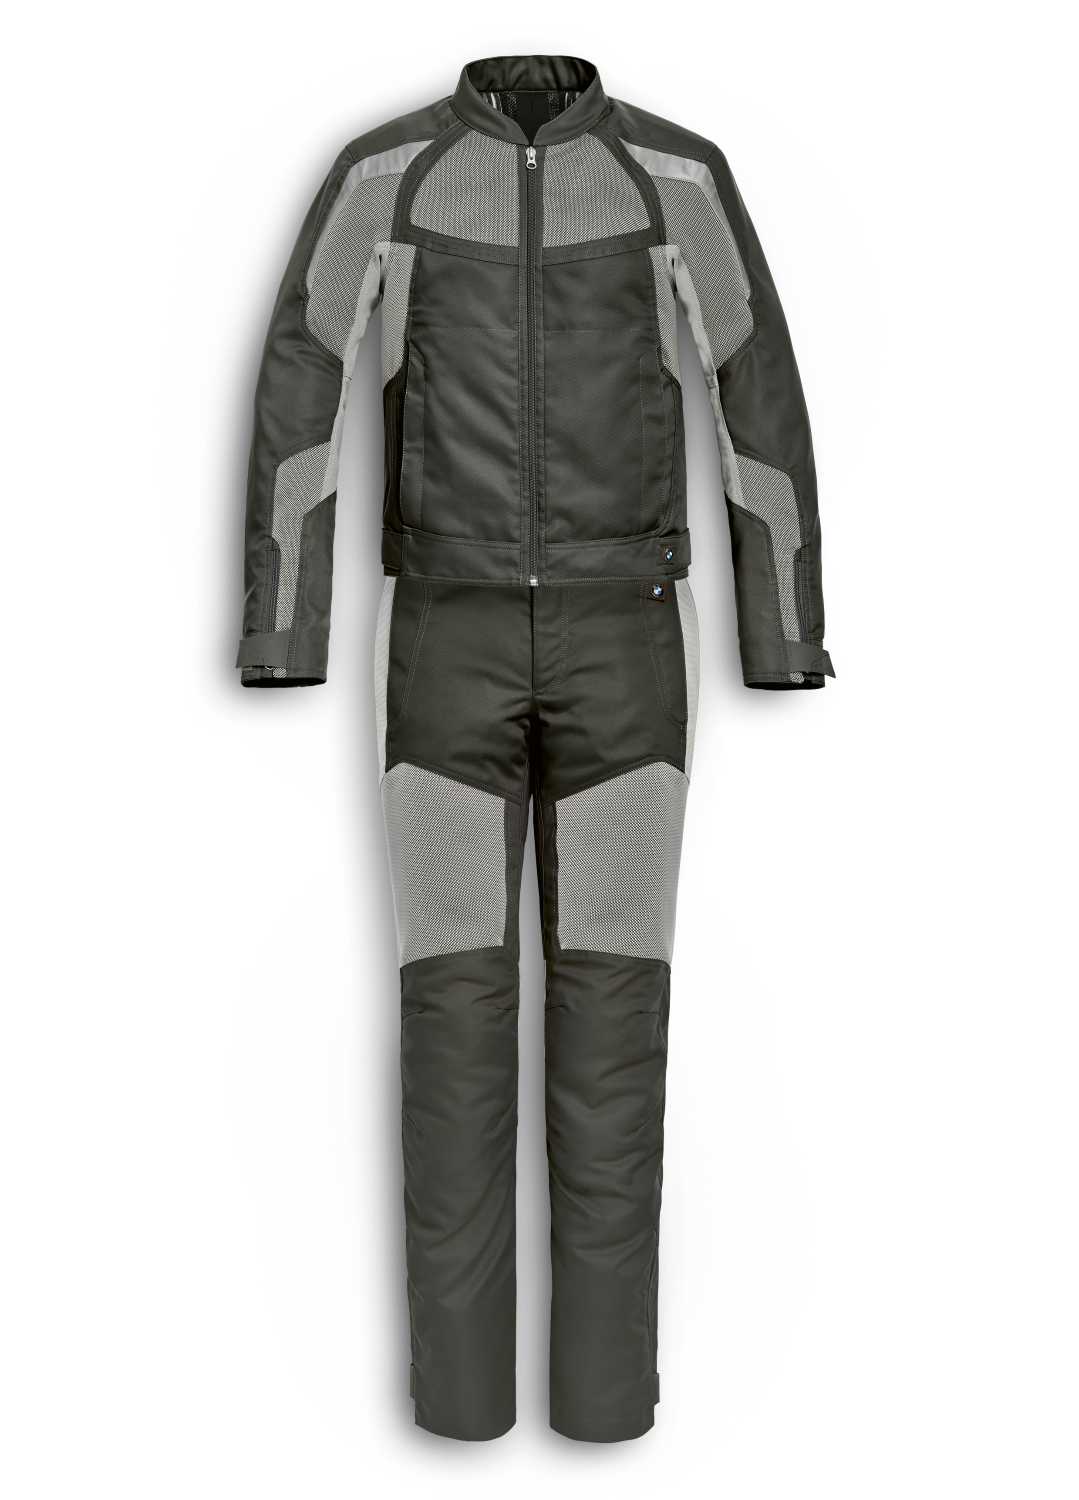 BMW Motorrad AirFlow suit. (11/2020)